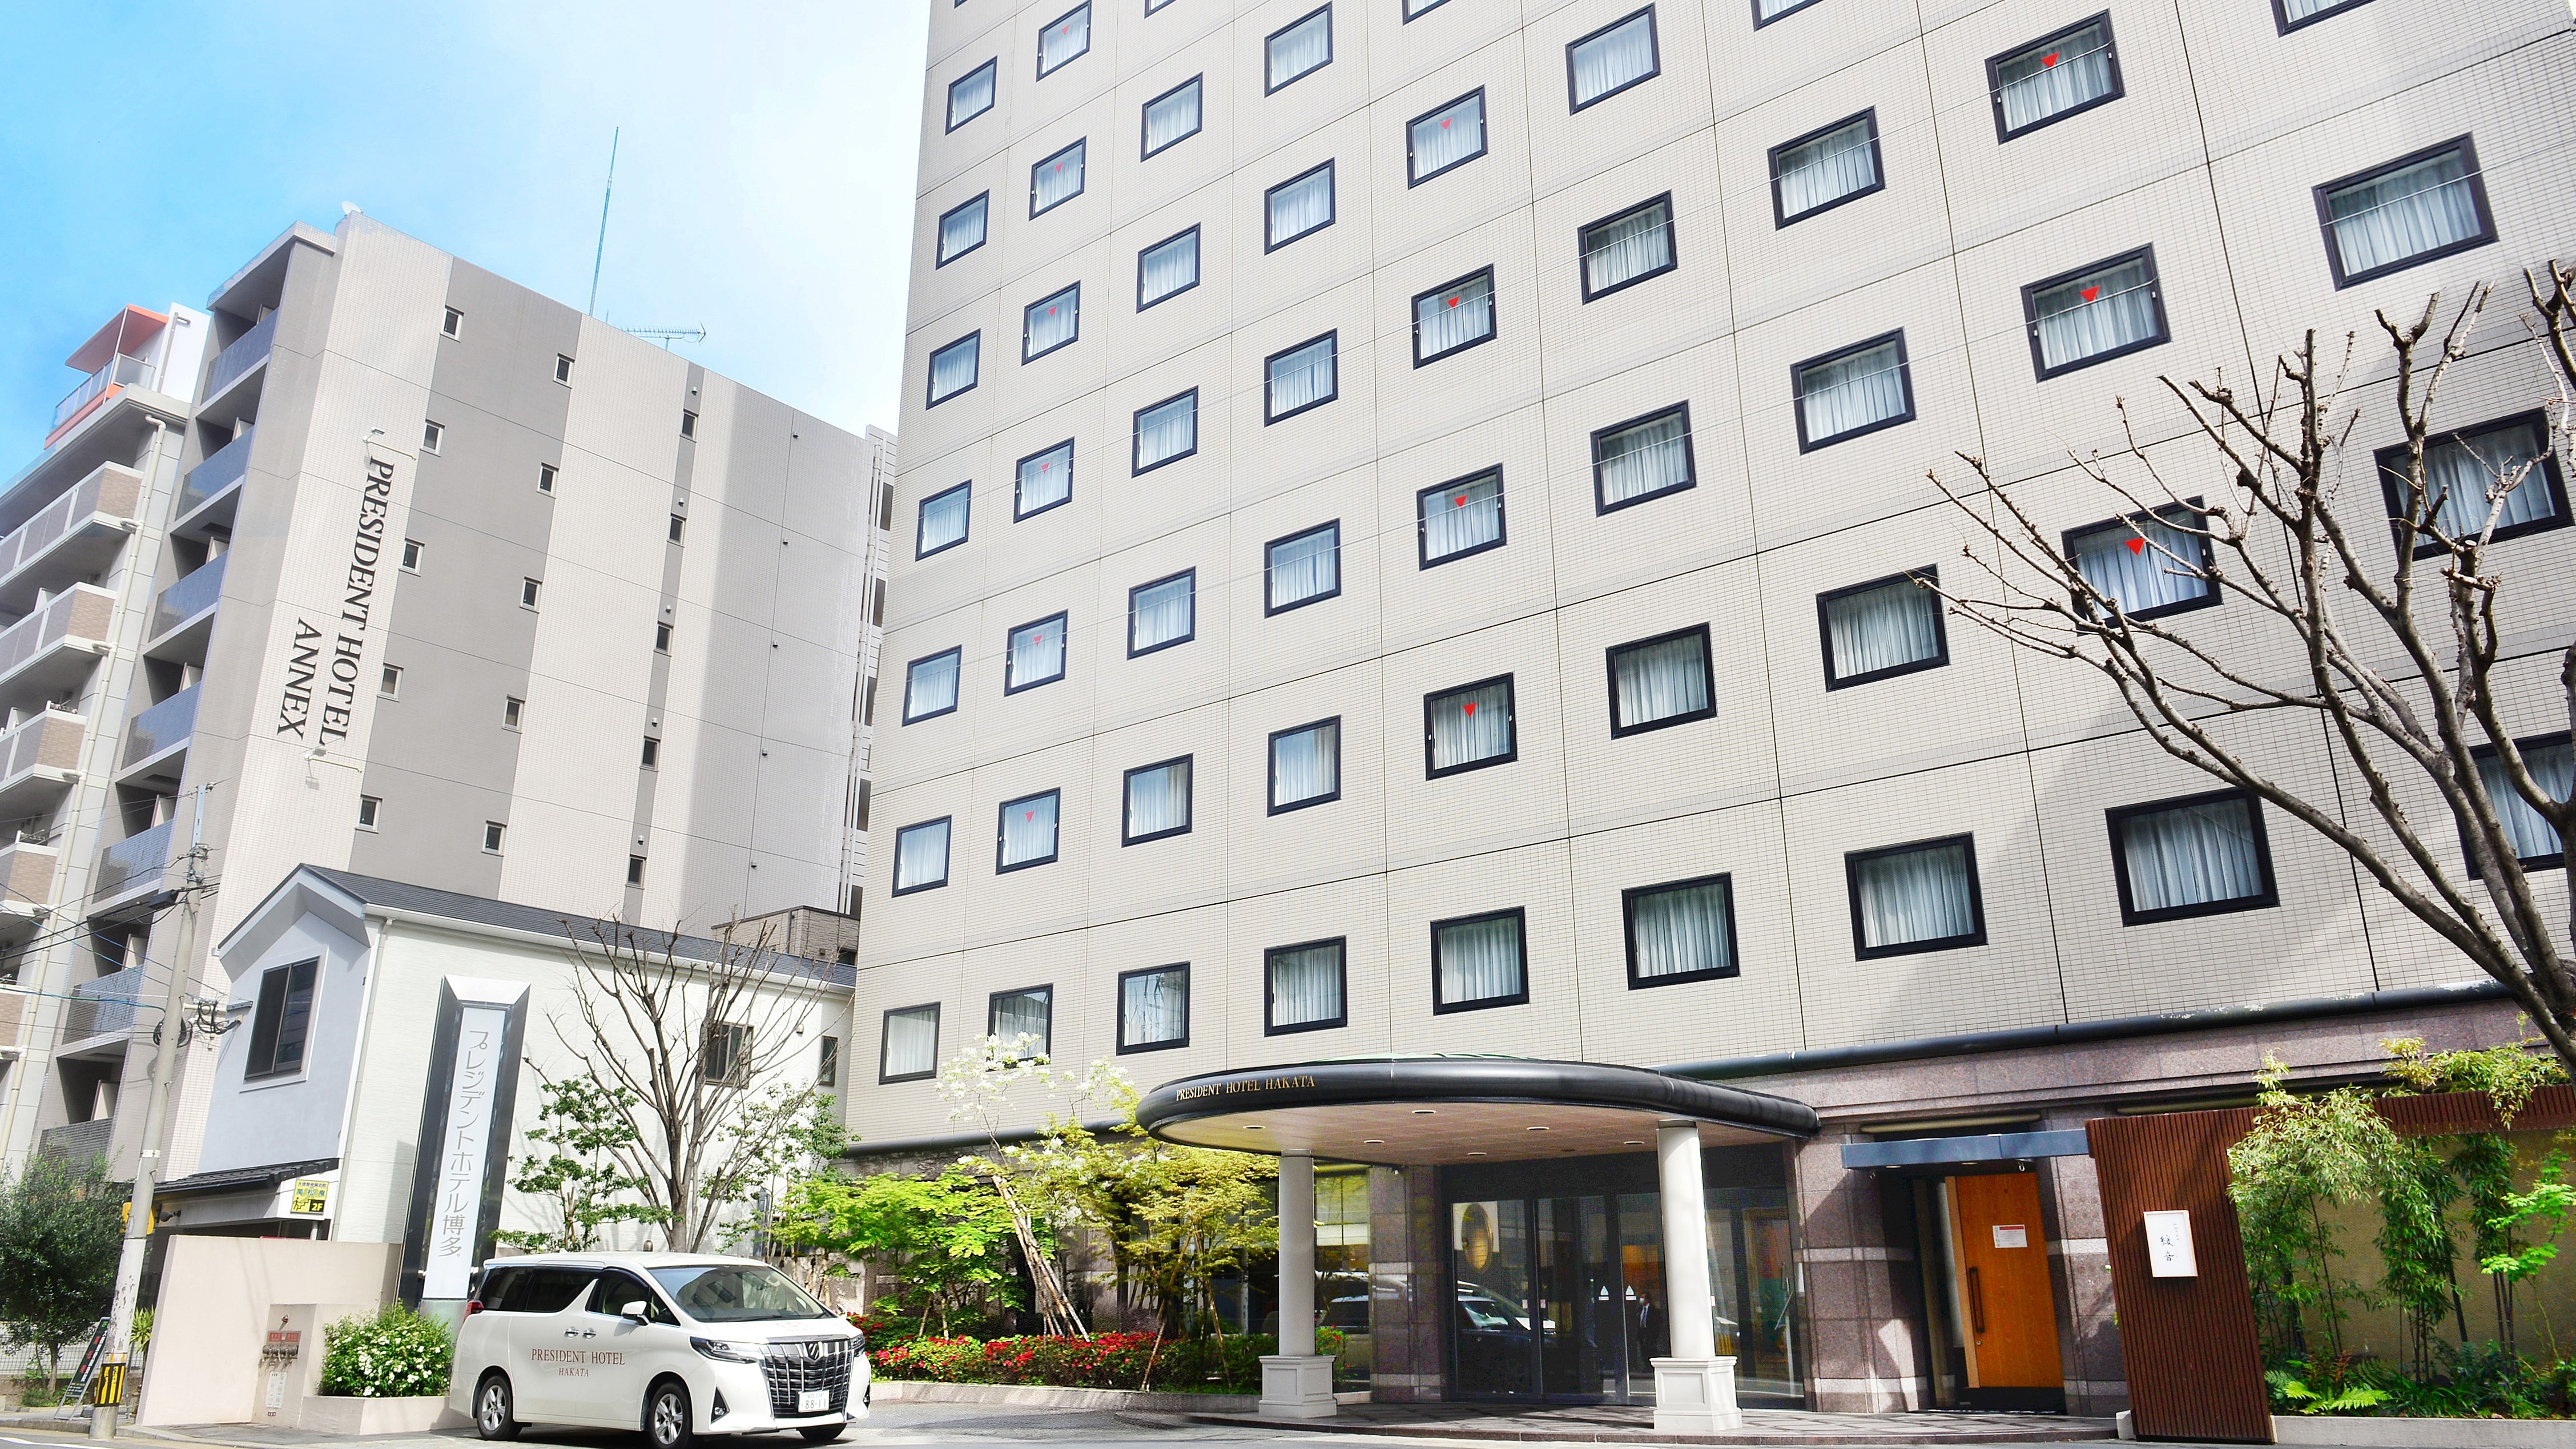 President Hotel Hakata / President Hotel Annex ★ Exterior ★